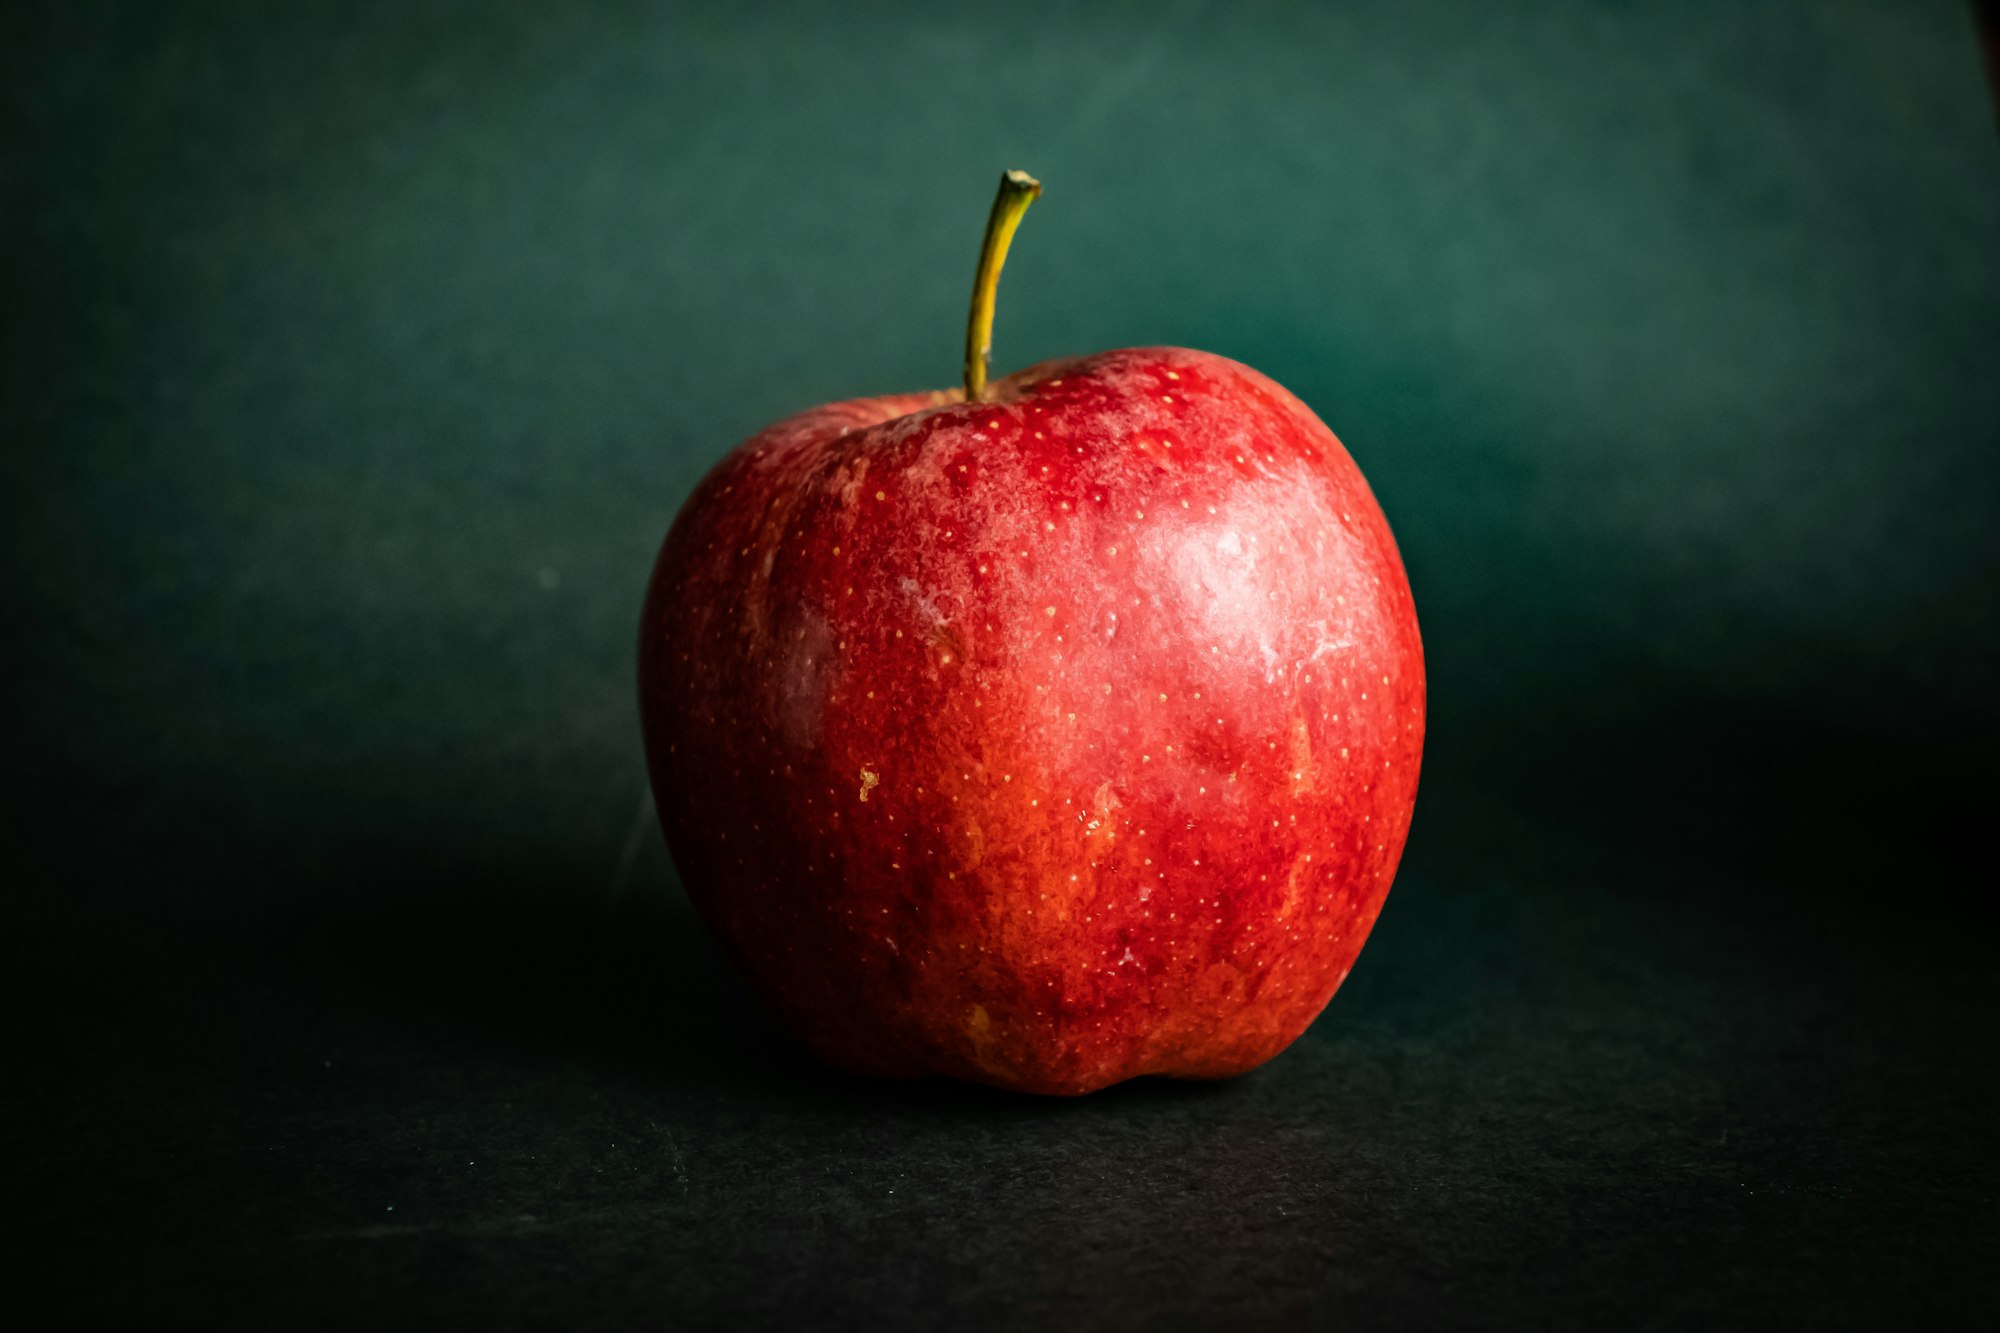 กิน Apple สักนิดก่อนกินข้าว ช่วยคุมน้ำตาลในกระแสเลือดได้